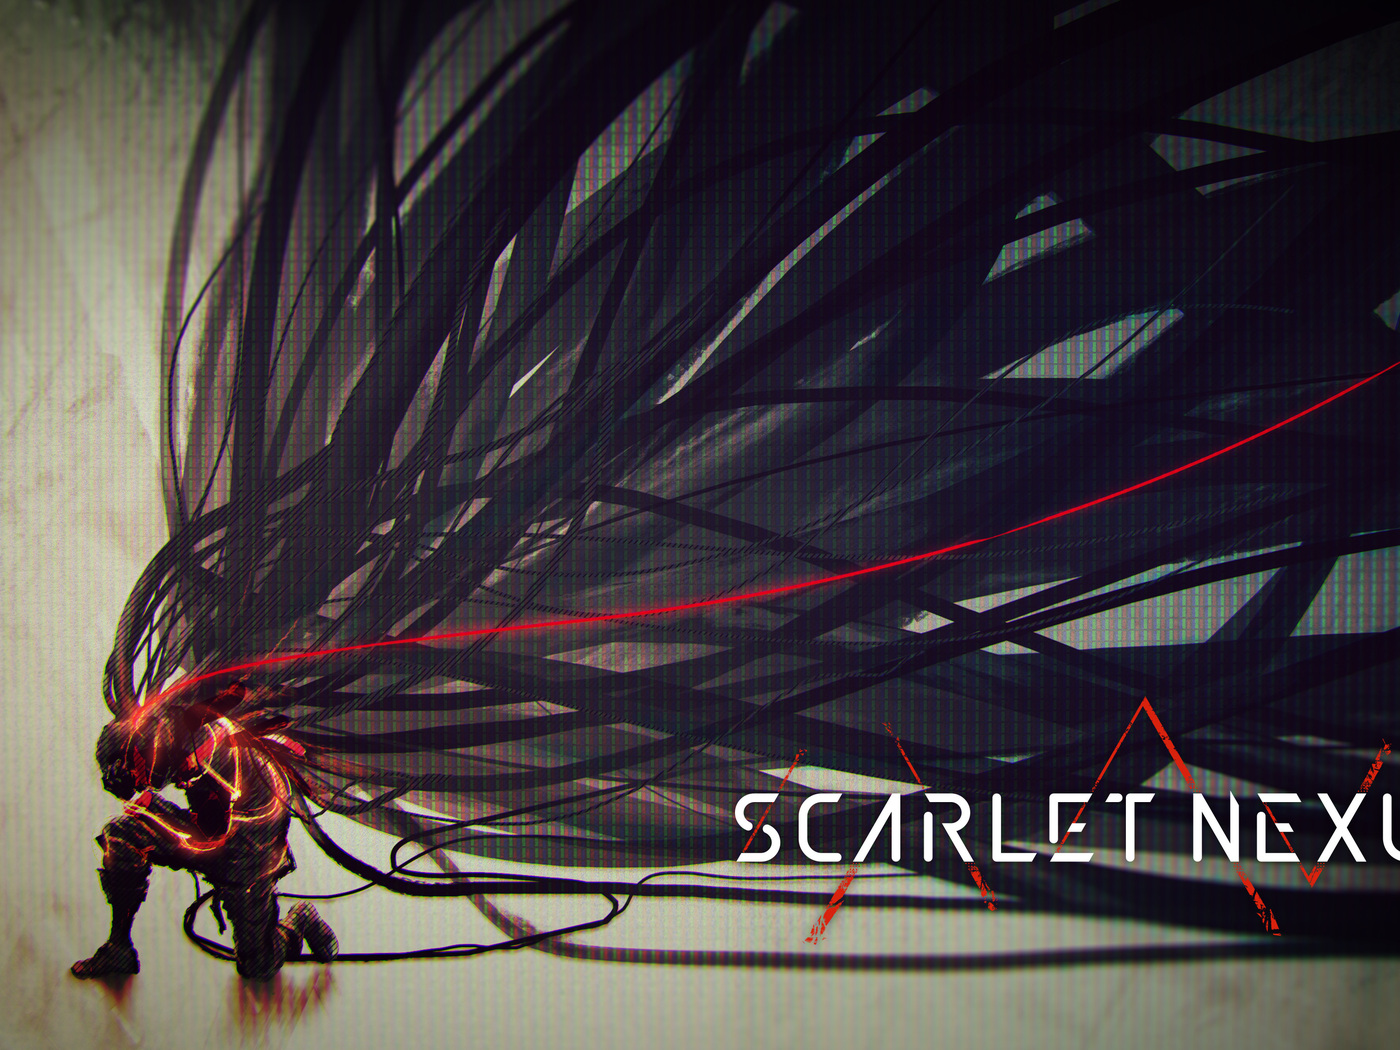 scarlet-nexus-2020-4k-a7.jpg